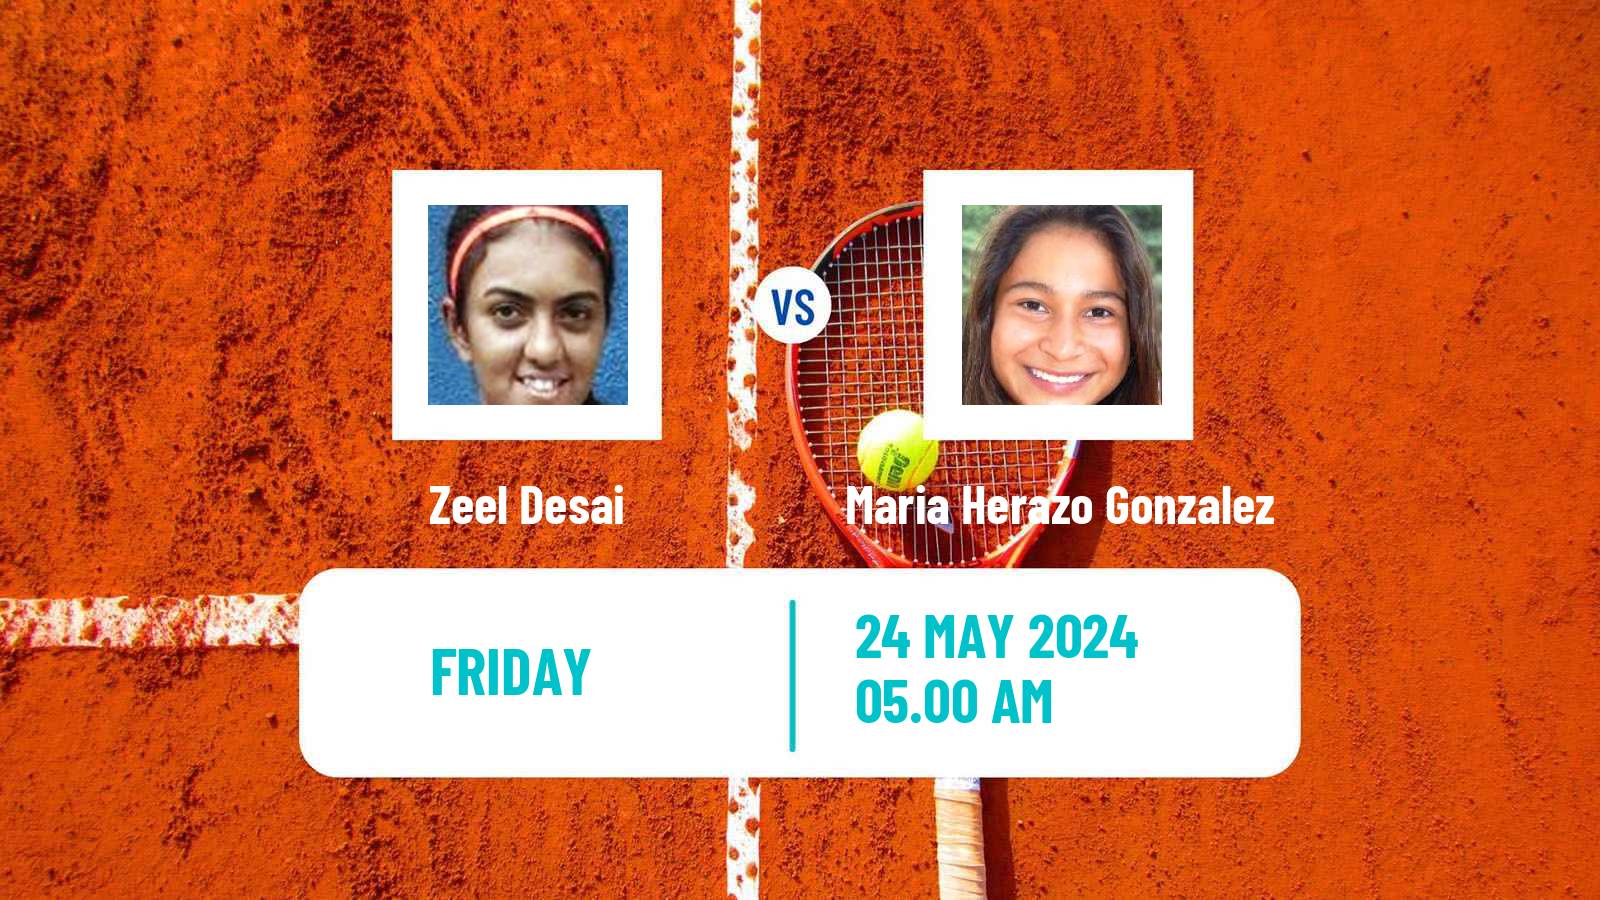 Tennis ITF W15 Monastir 19 Women Zeel Desai - Maria Herazo Gonzalez